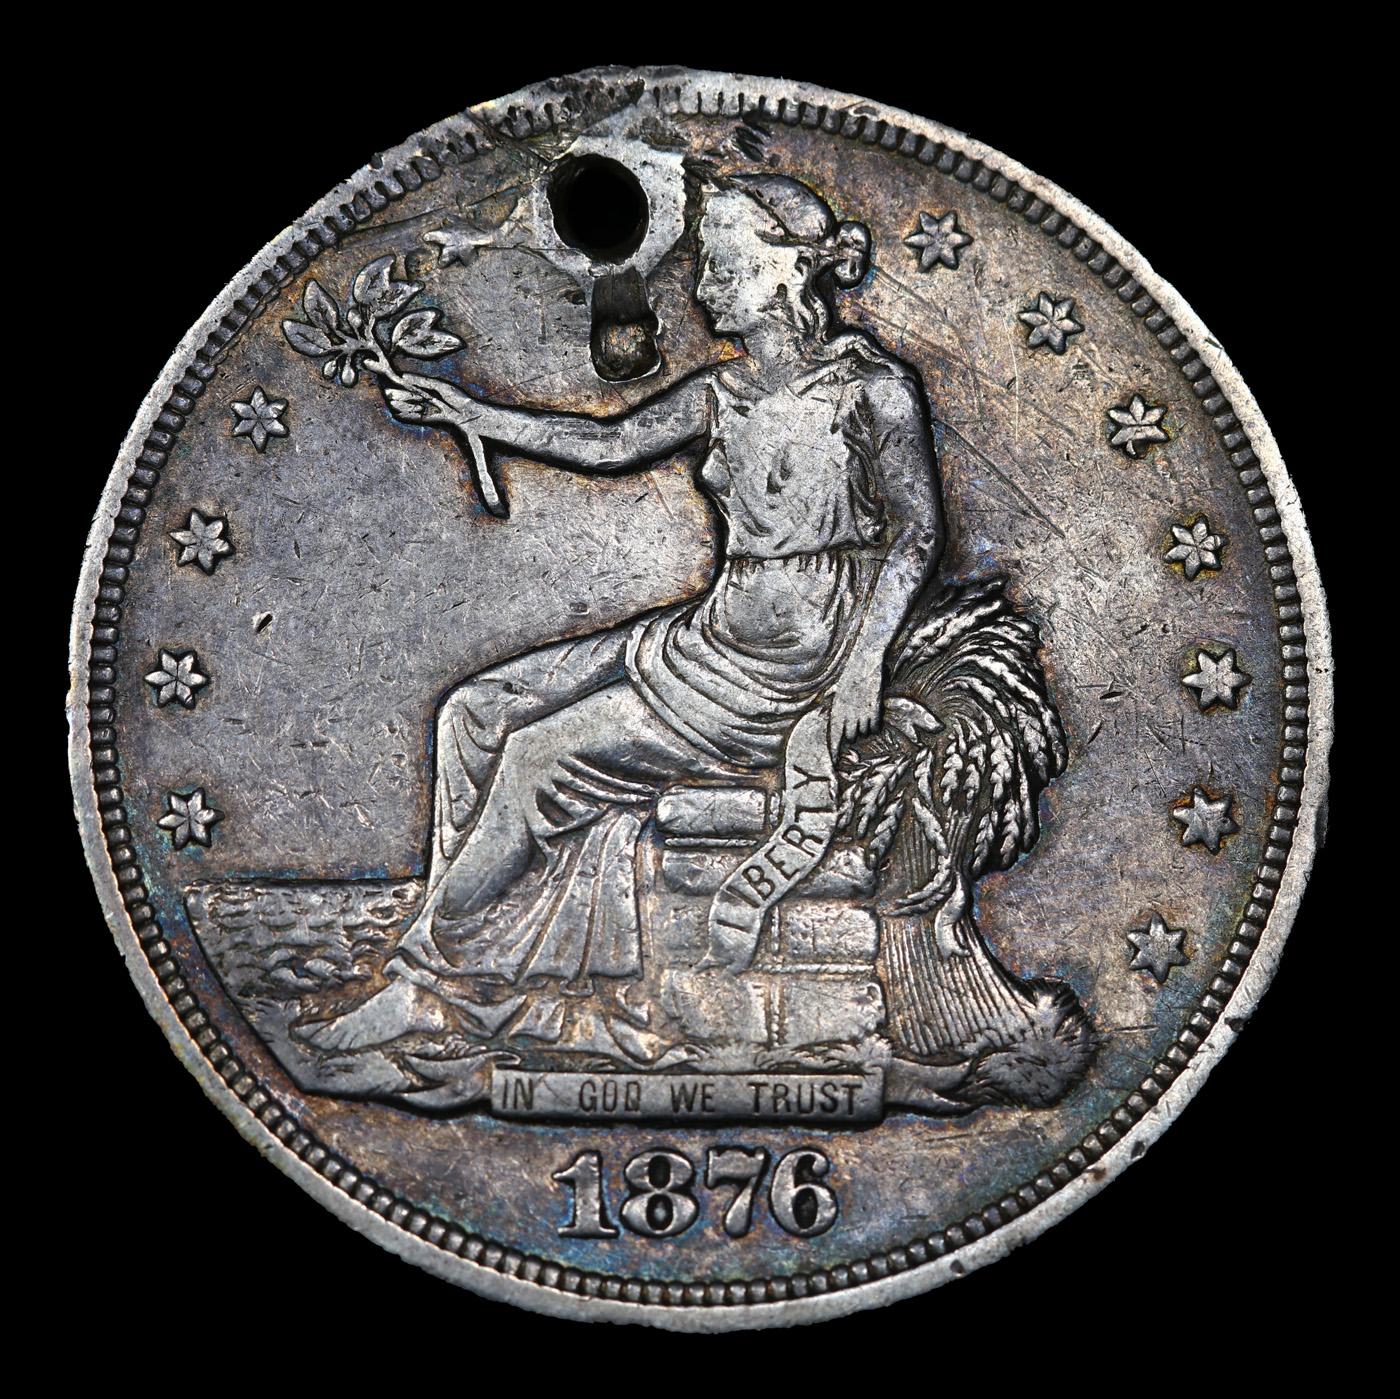 1876-p Trade Dollar $1 Grades vf details